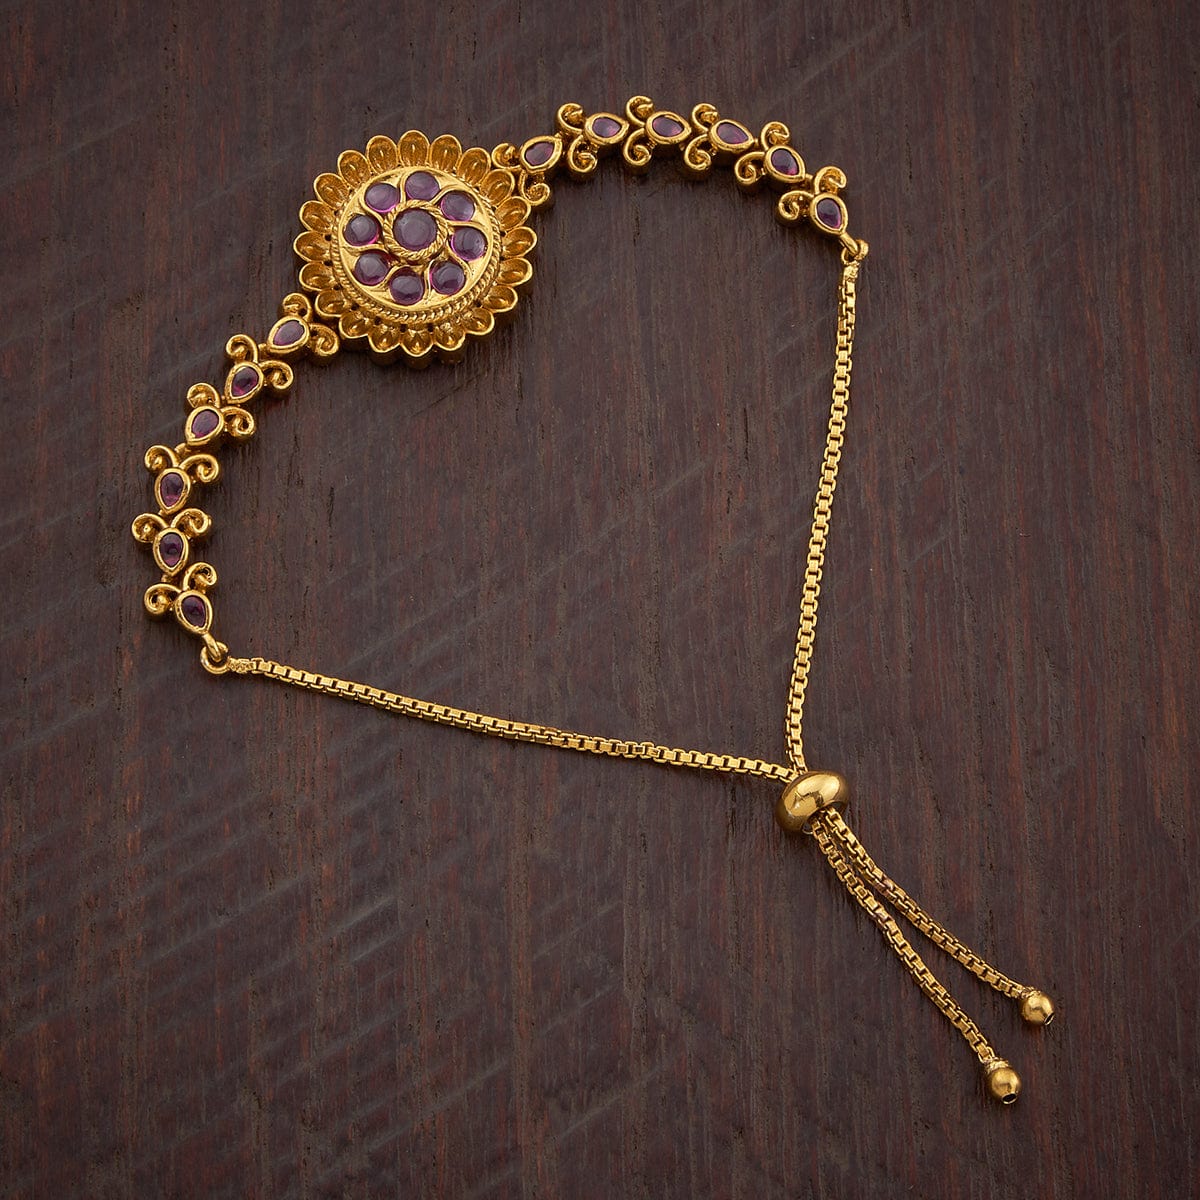 Antique look gold Bracelet design  Gold bracelet design with antique  look Crazy about Fashion  YouTube